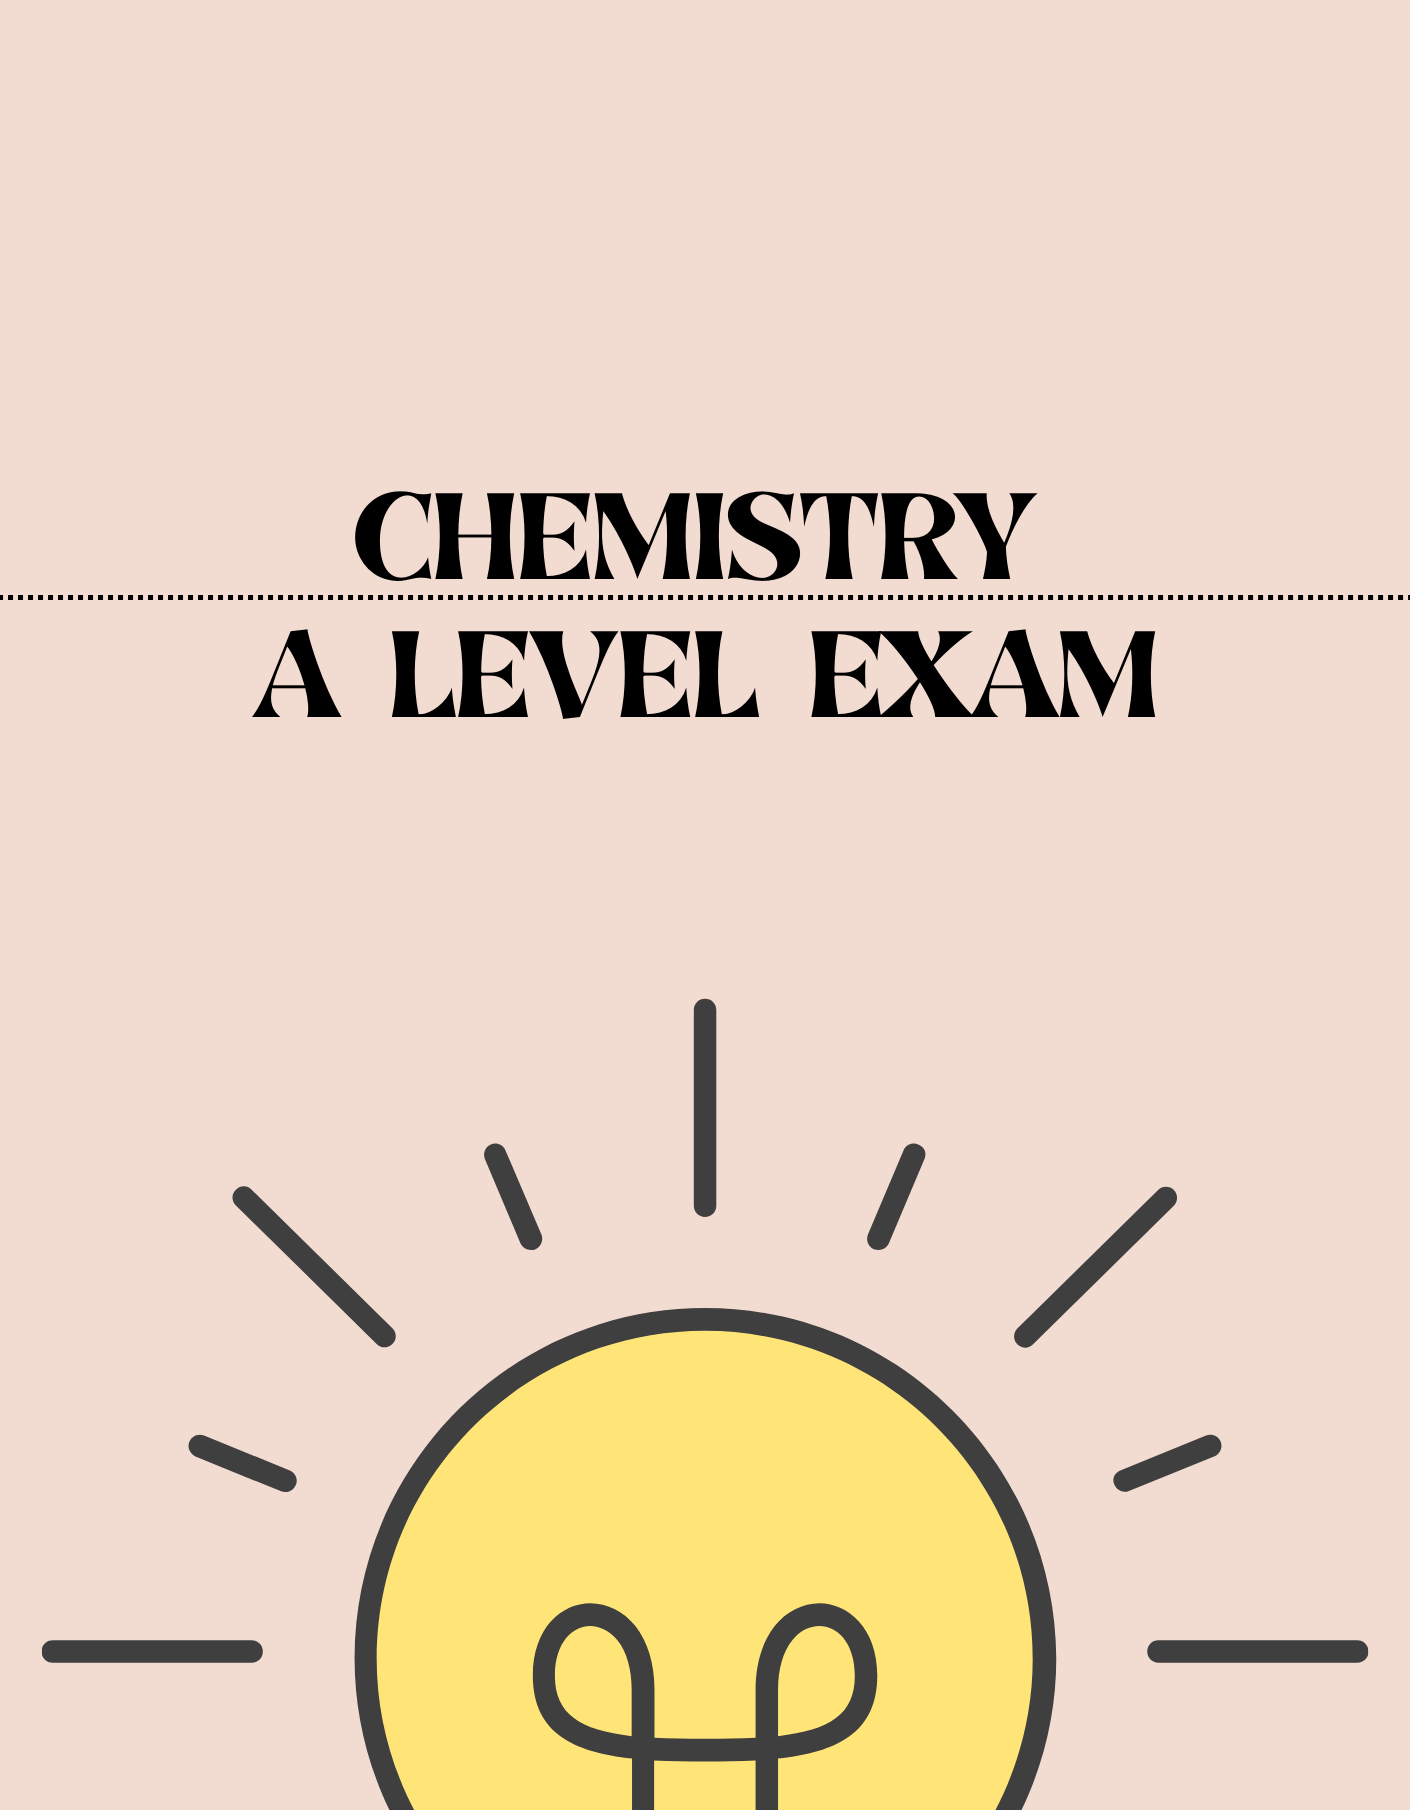 A Level - Chemistry Exam - Exam Centre Birmingham